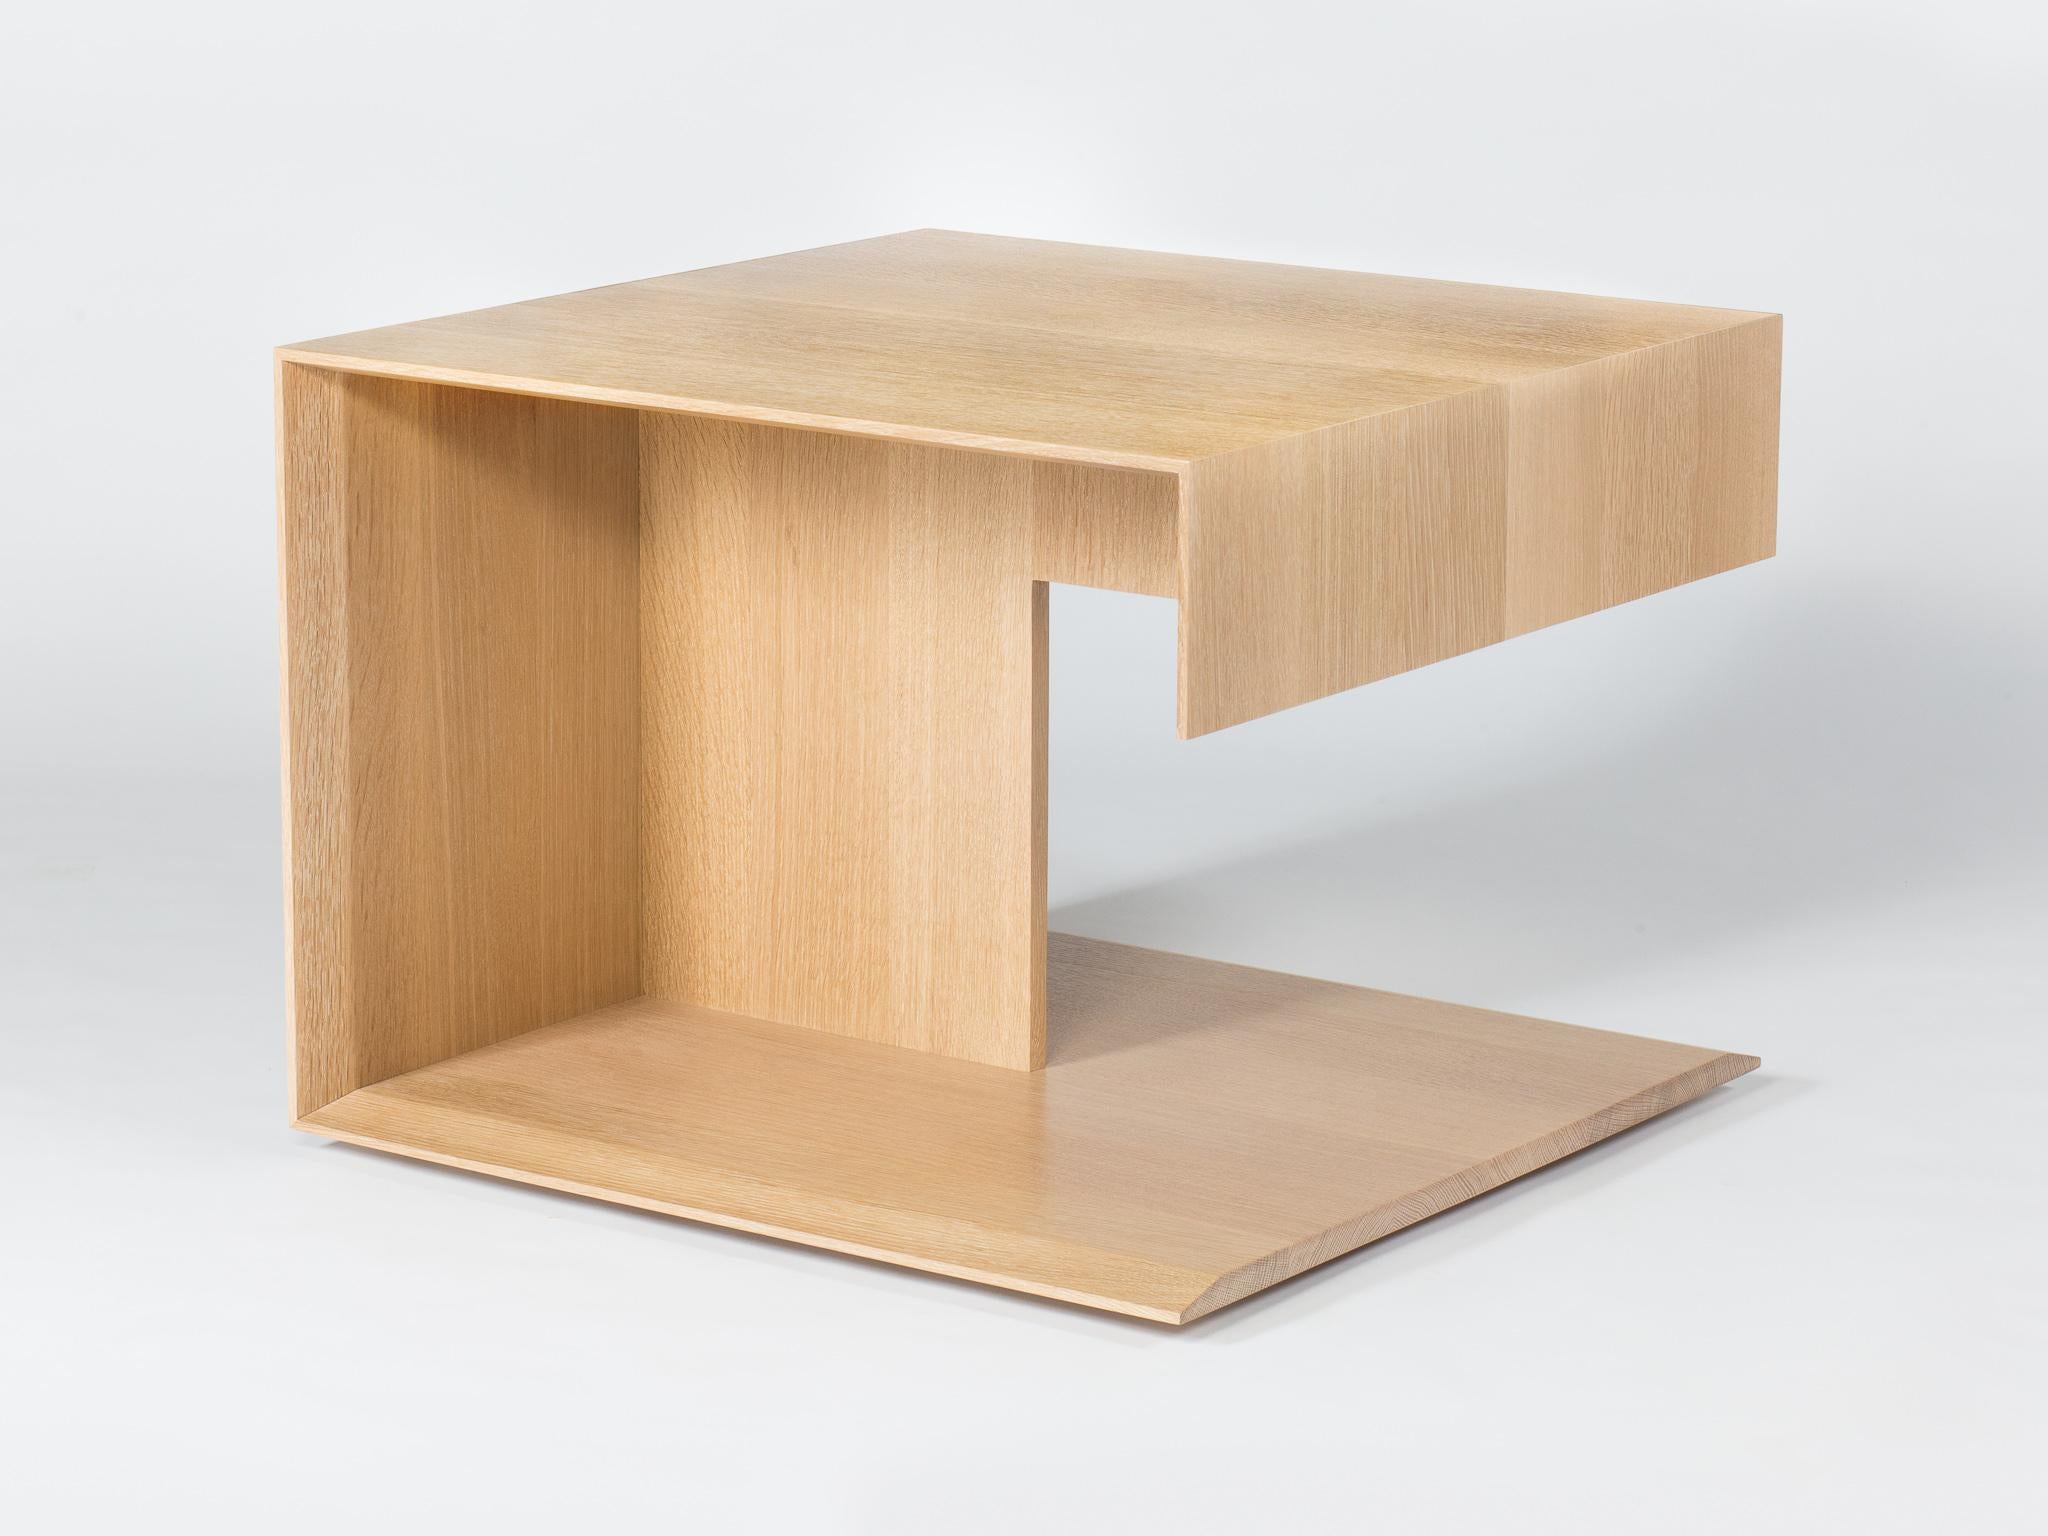 Cette version de notre table d'appoint en bois moderne s'appelle la table 